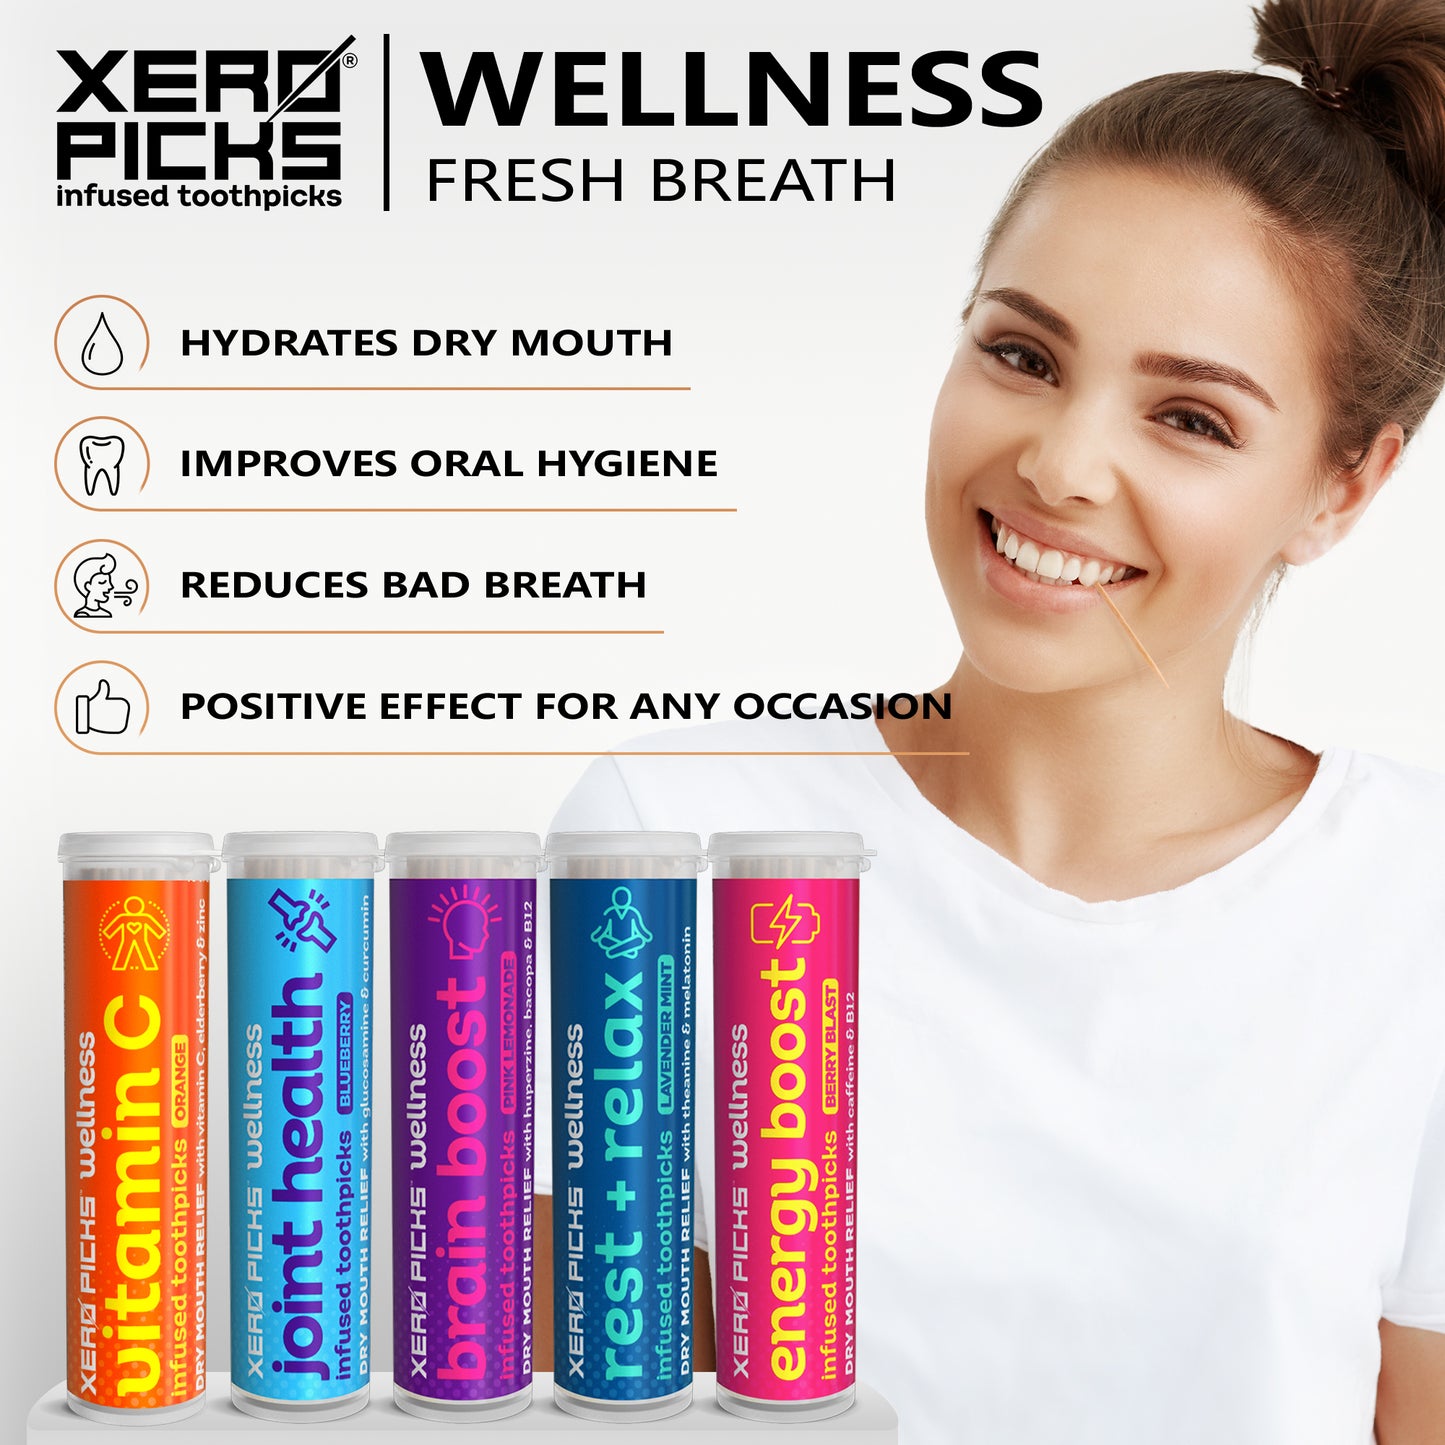 Xero Picks® Wellness infused toothpicks